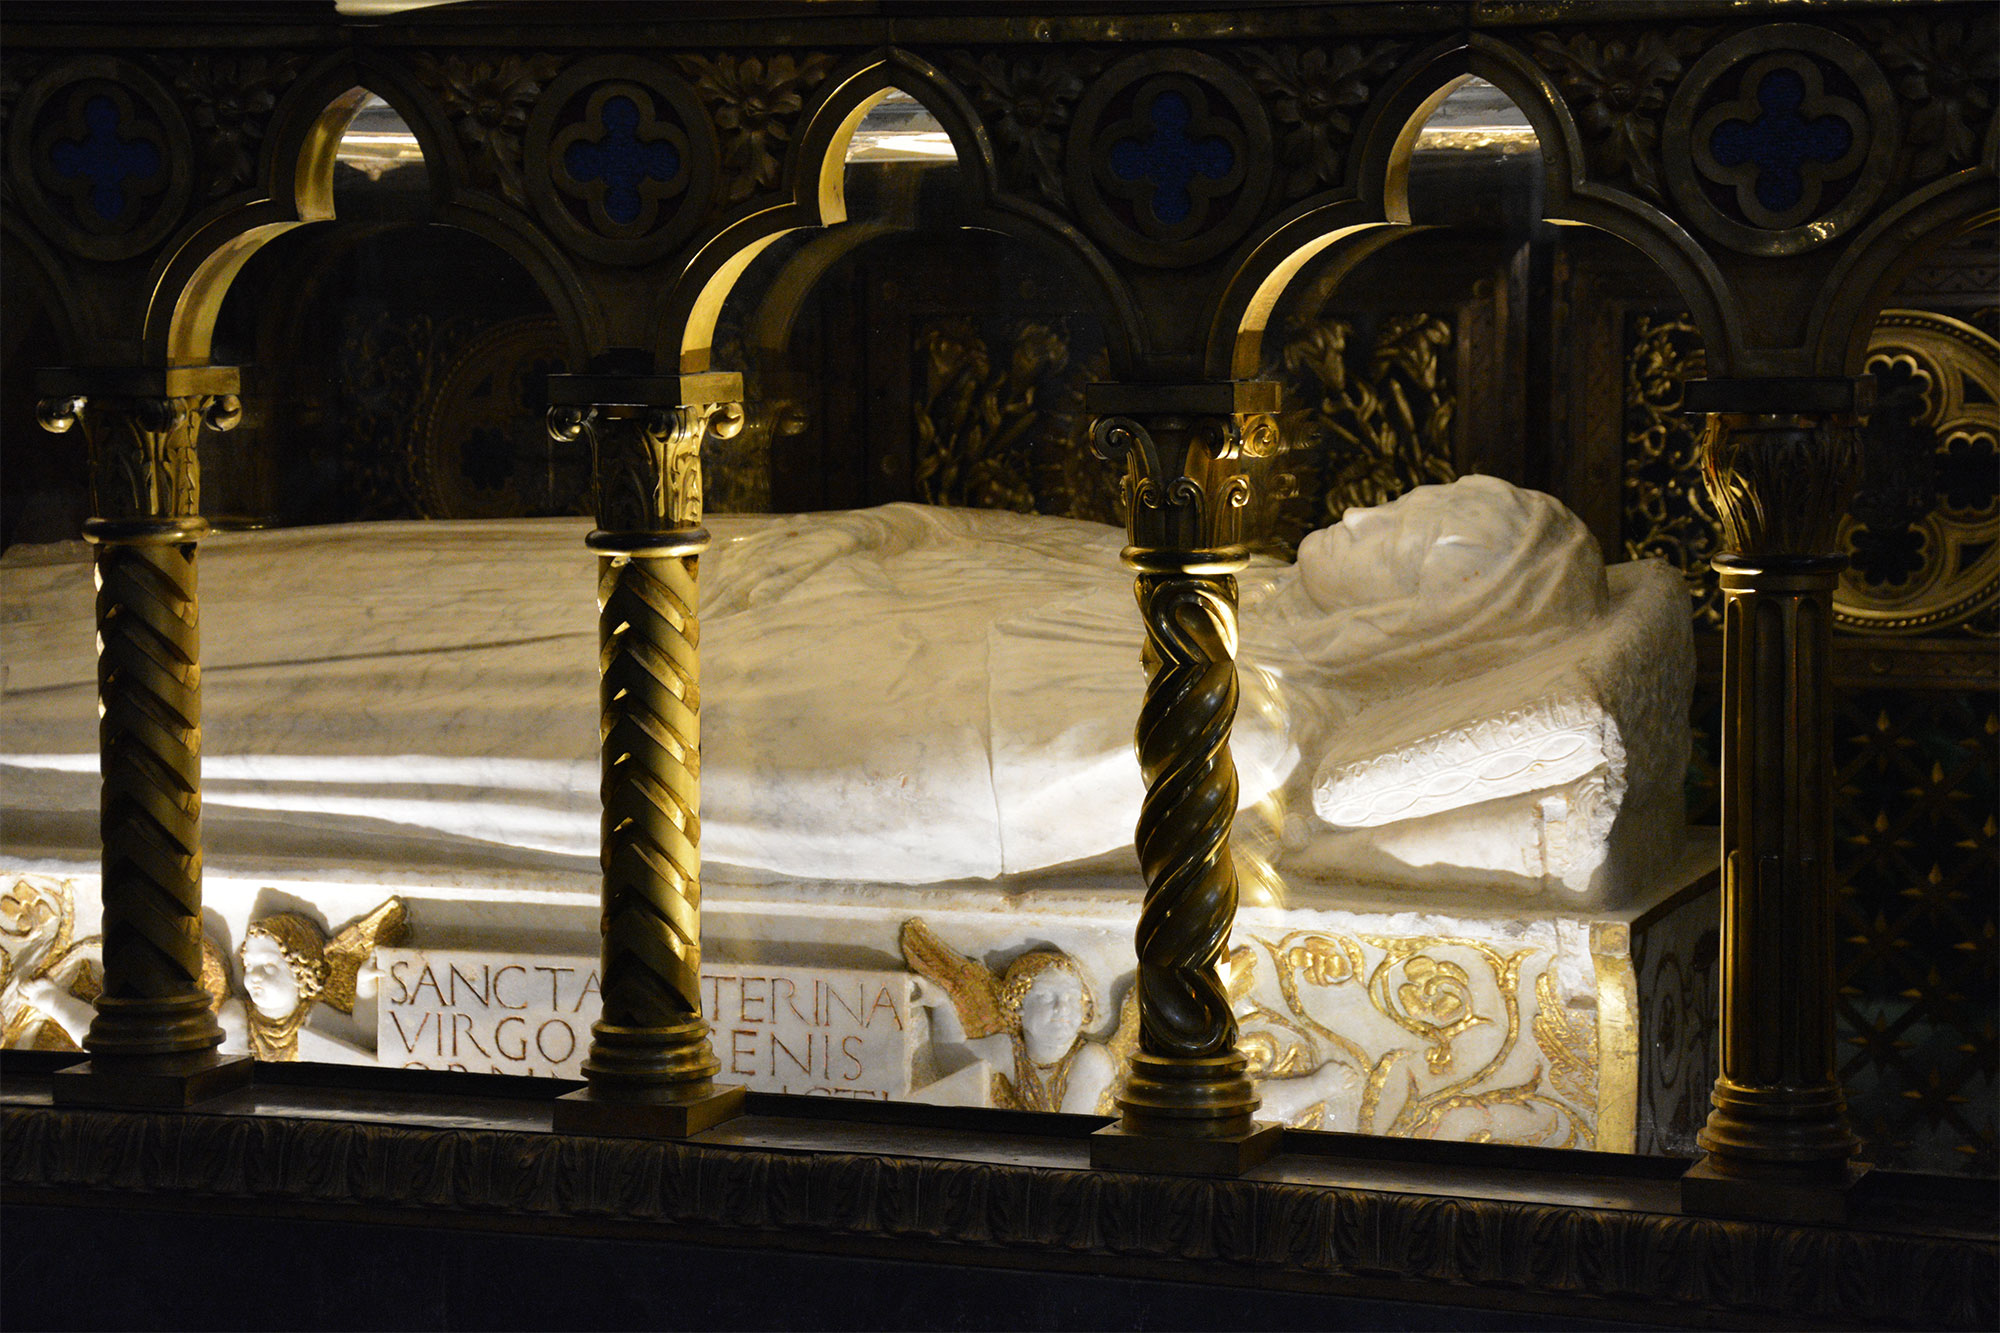 5. Tomb of St Catherine of Siena